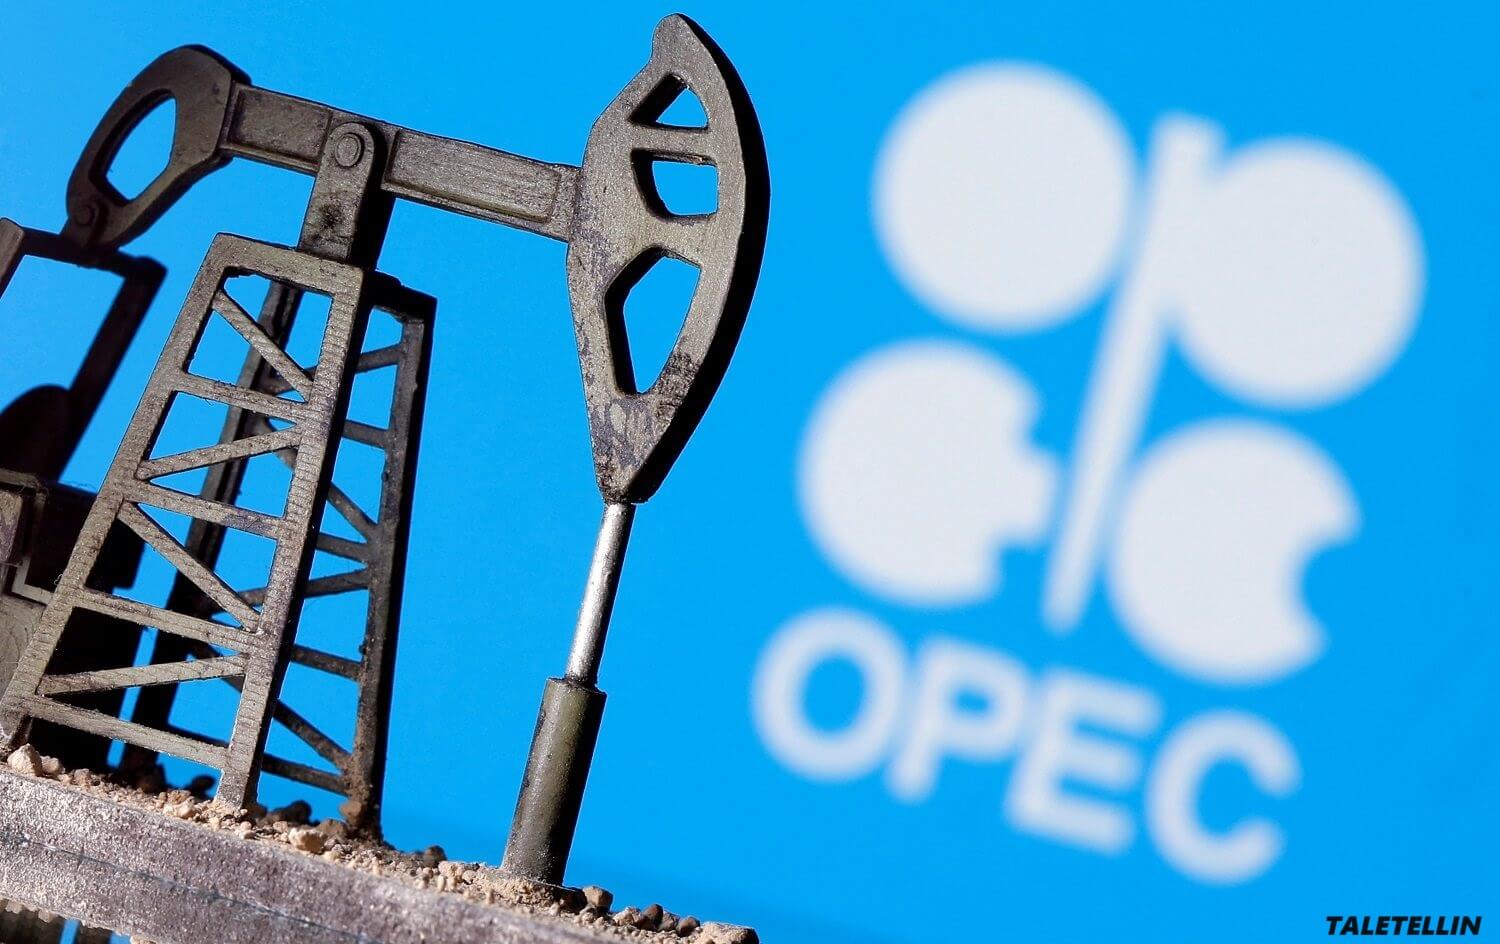 ลดการผลิตของ OPEC+ ลงลึกยิ่งขึ้นด้วยการขยายเวลาจากซาอุดีอาระเบีย รัสเซีย และบริษัทน้ำมันยักษ์ใหญ่อื่นๆ สมาชิกกลุ่มพันธมิตรน้ำมันโอเปกบางส่วน